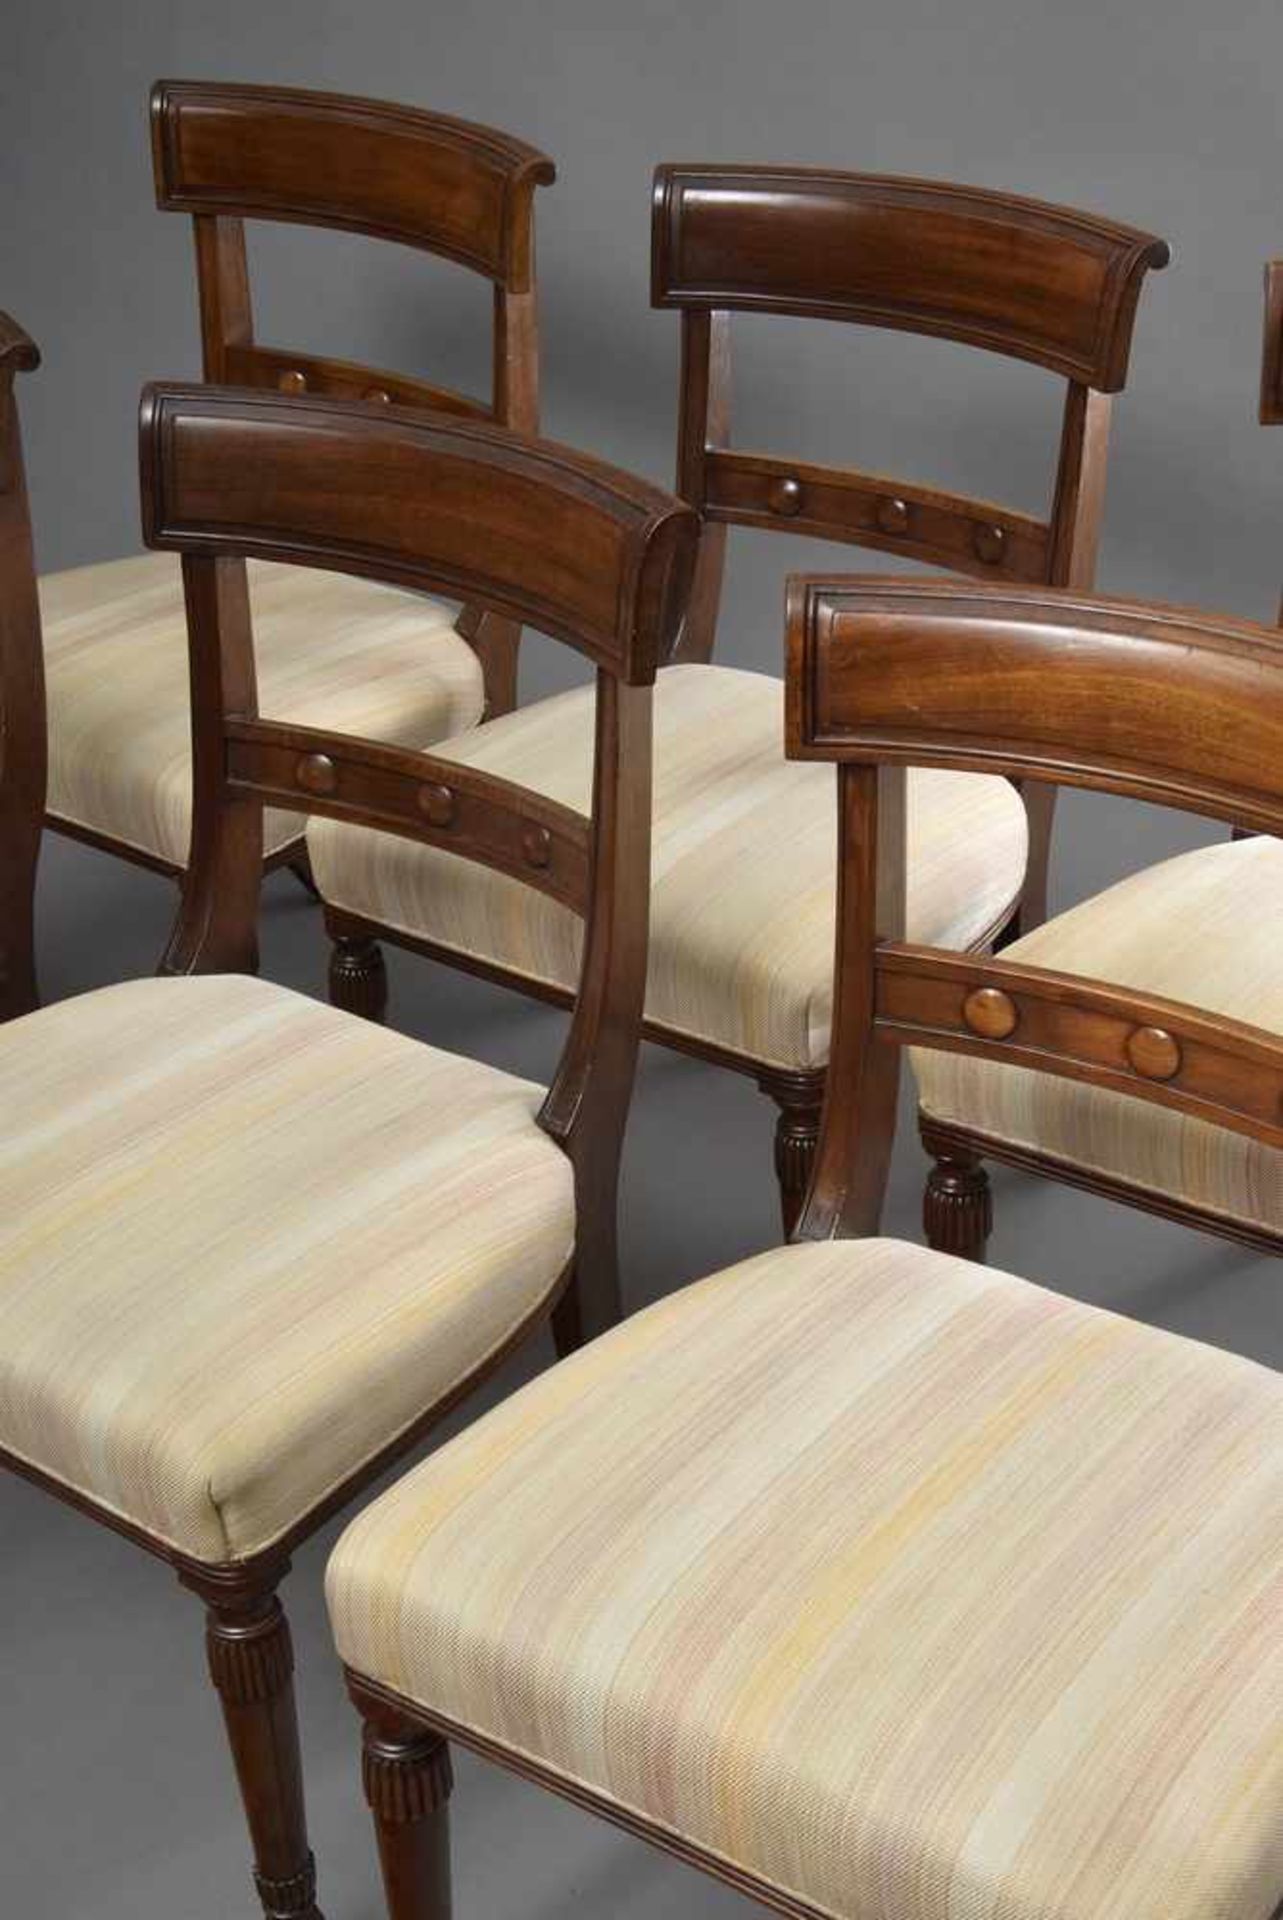 6 Englische Stühle mit beschnitzten Vorderbeinen u. Nieten Trompe l'oeil in den Lehnen, massiv - Bild 3 aus 3